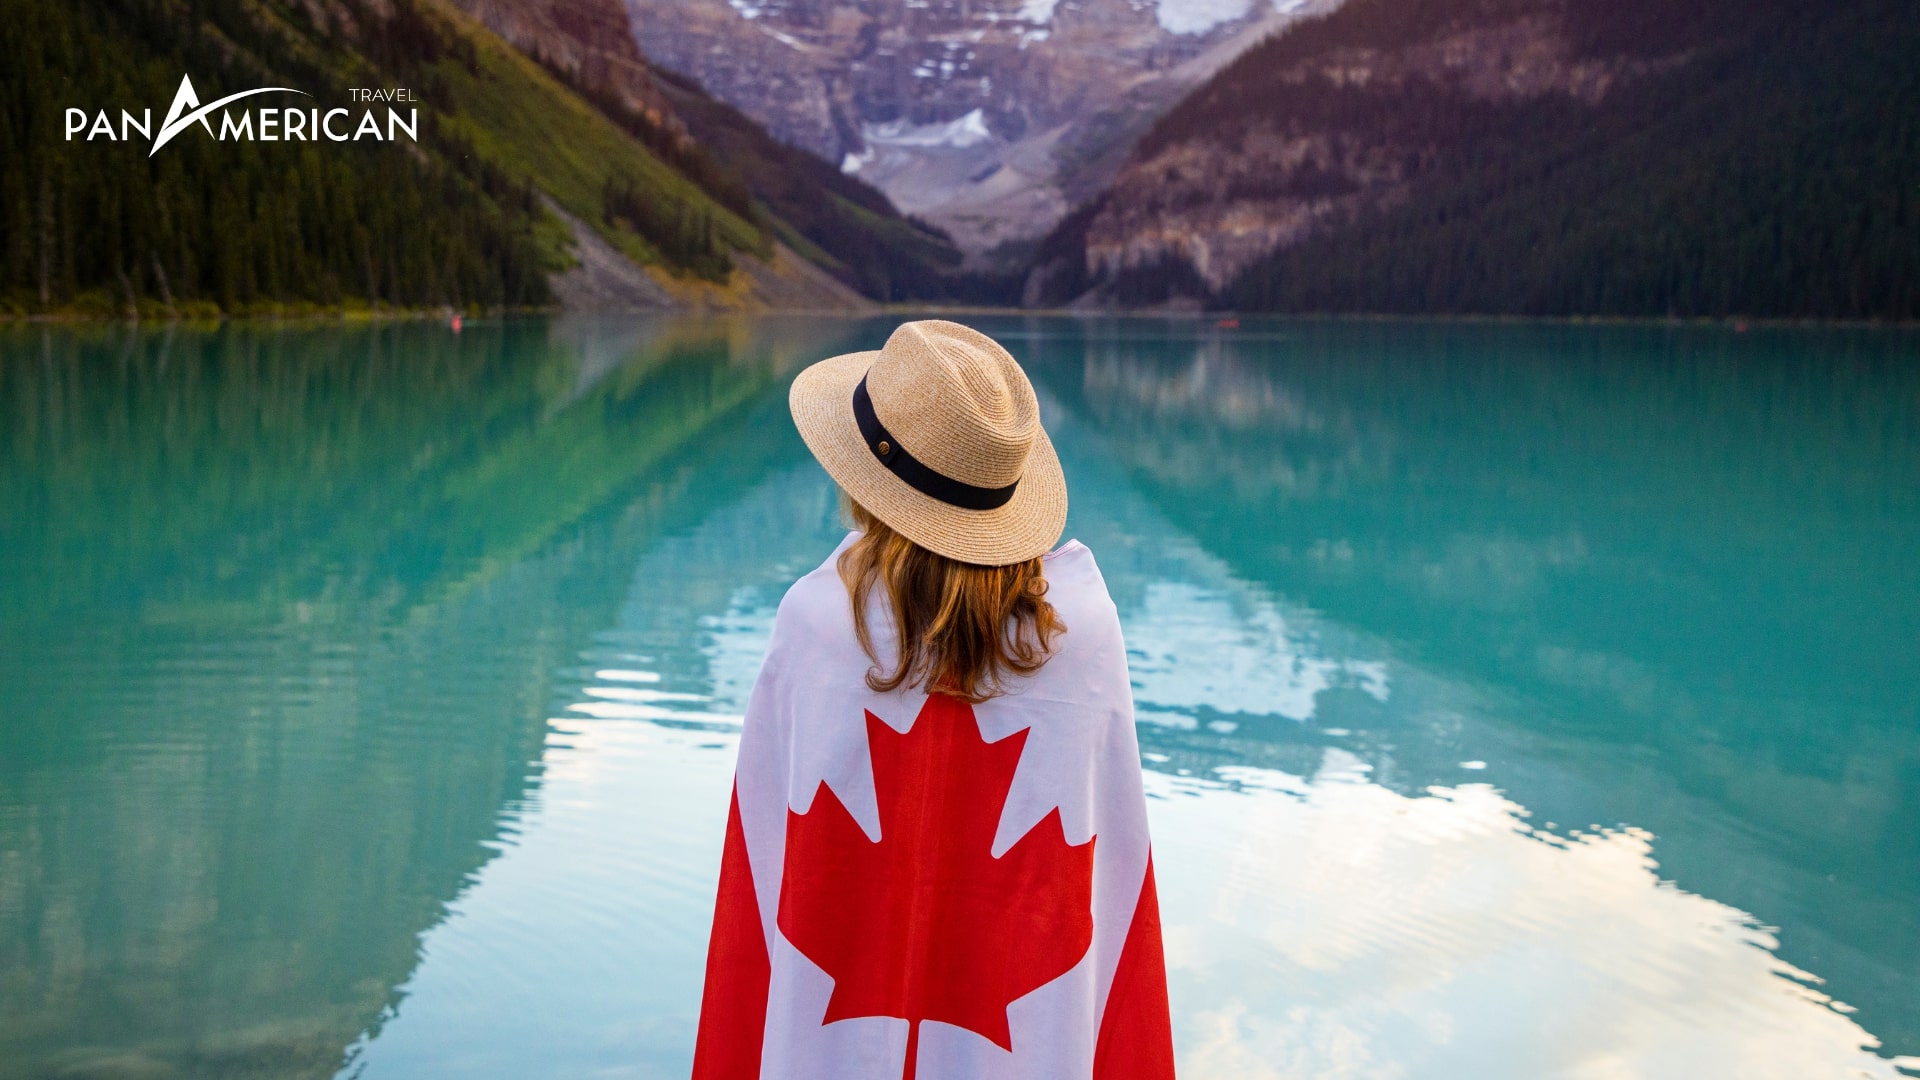 Du lịch Canada mở ra nhiều cơ hội cho bạn!